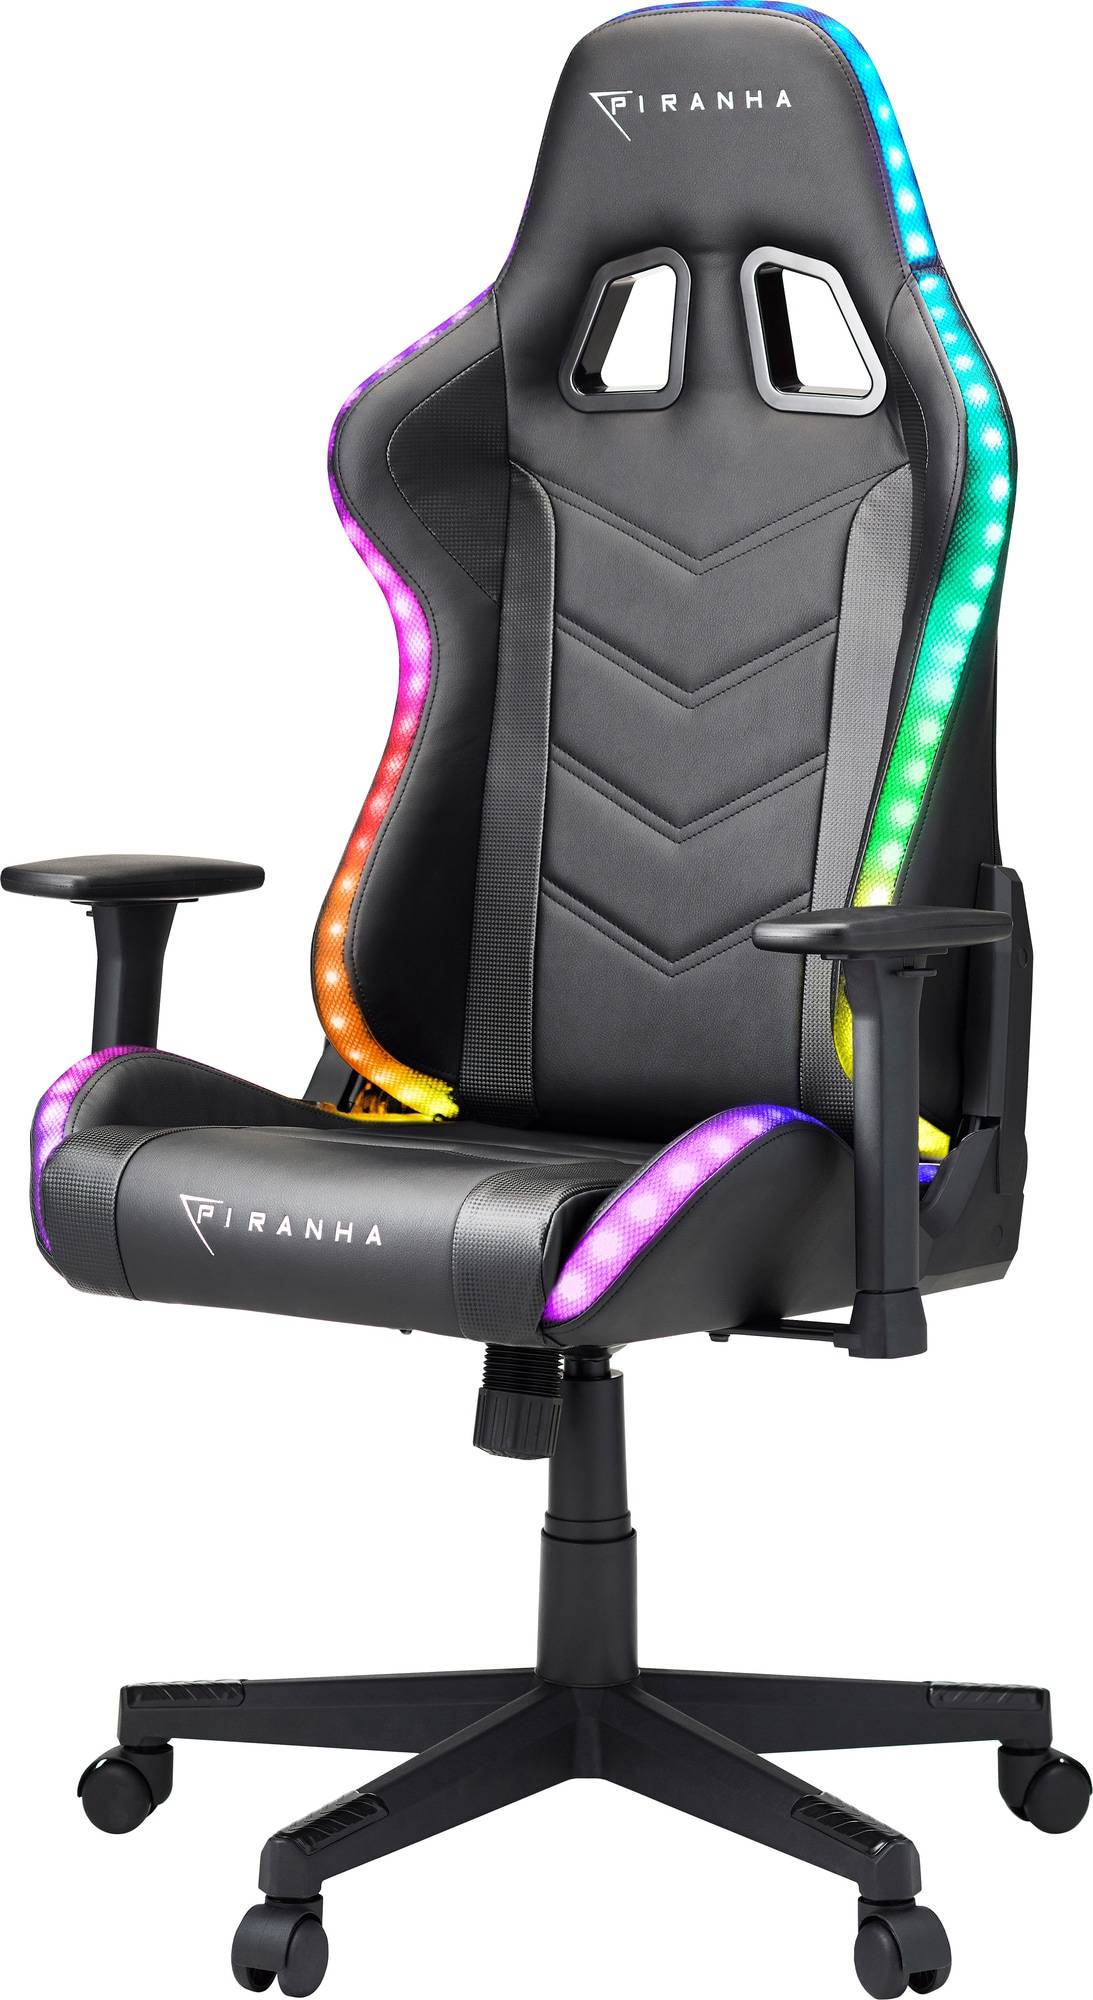  Bild på Piranha Attack Gaming Chair - RGB gamingstol